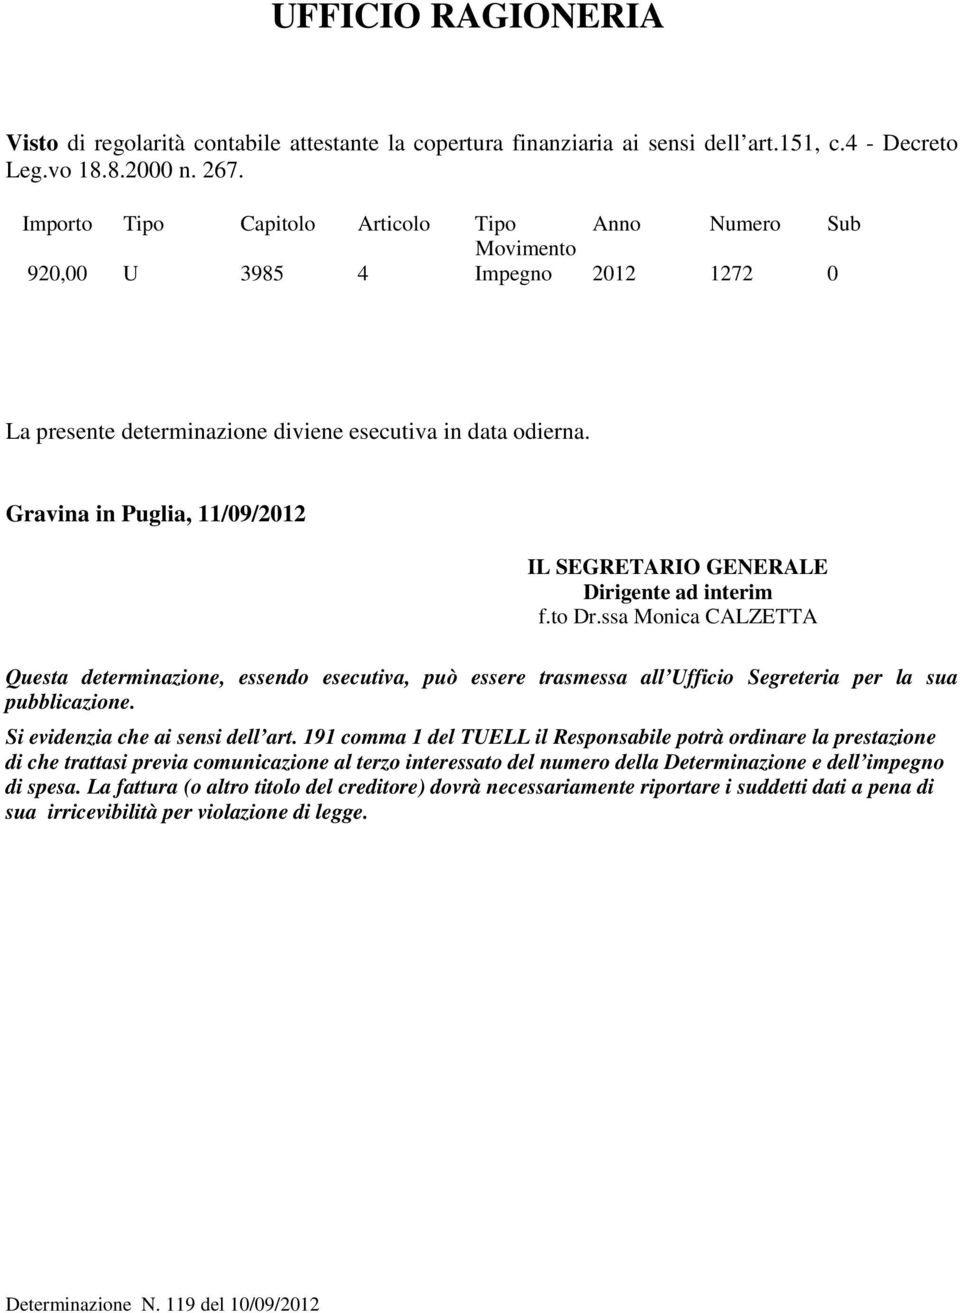 Gravina in Puglia, 11/09/2012 IL SEGRETARIO GENERALE Dirigente ad interim f.to Dr.